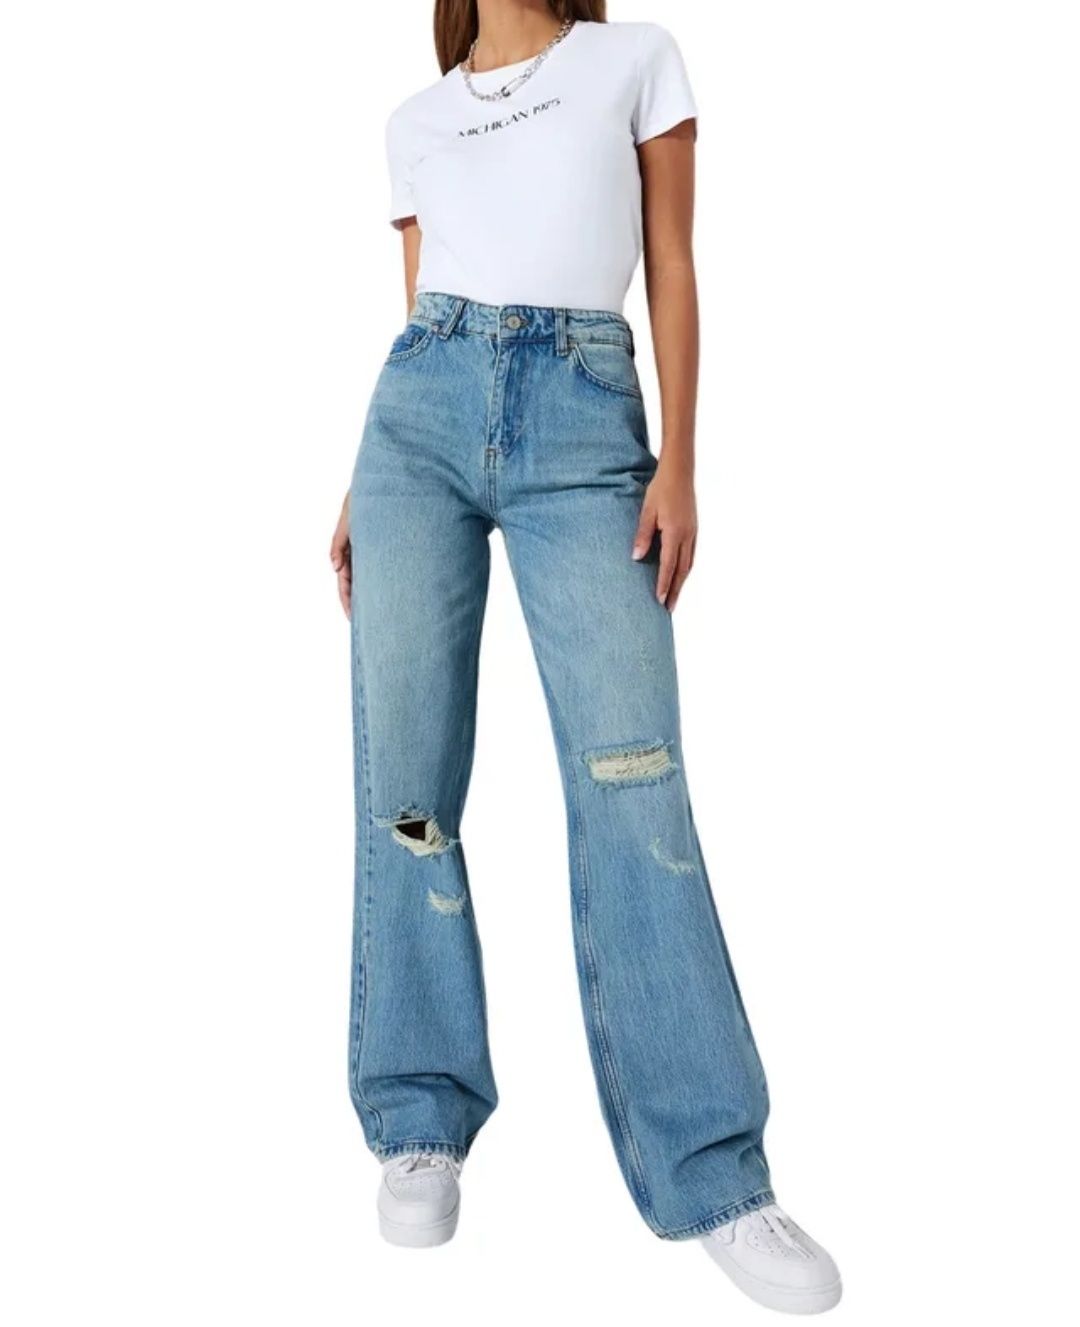 Spodnie jeansowe nowe z metką 36 / S wysoki stan szeroka nogawka